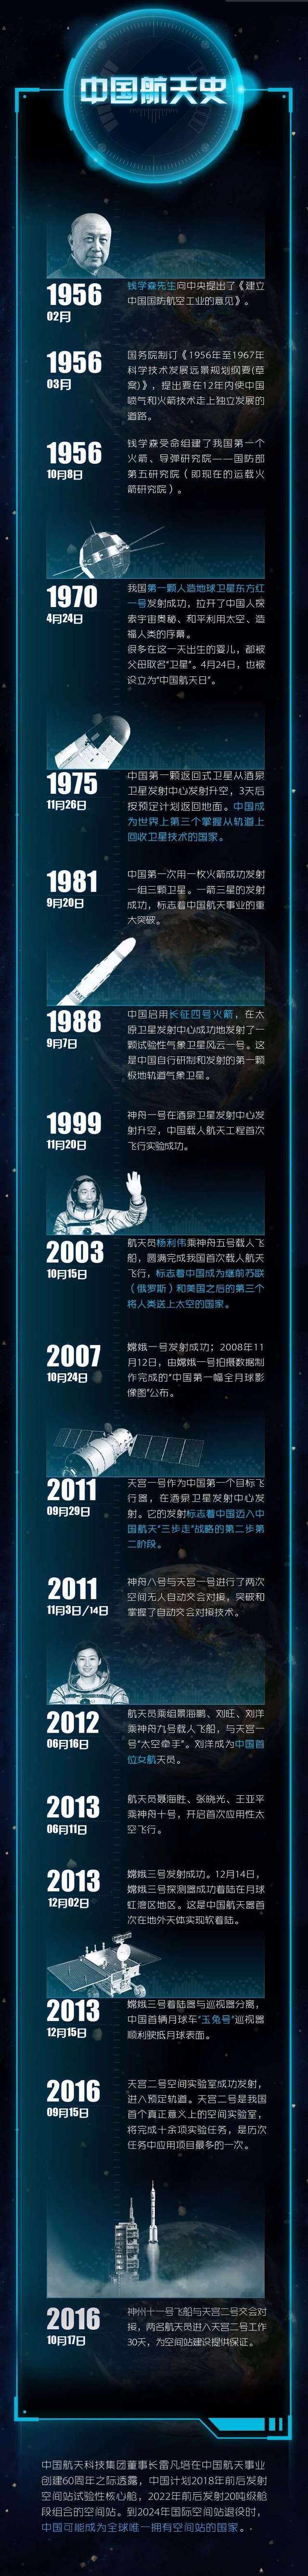 航天有奖科普 | 作为 chinese 的你还不了解中国航天史吗?